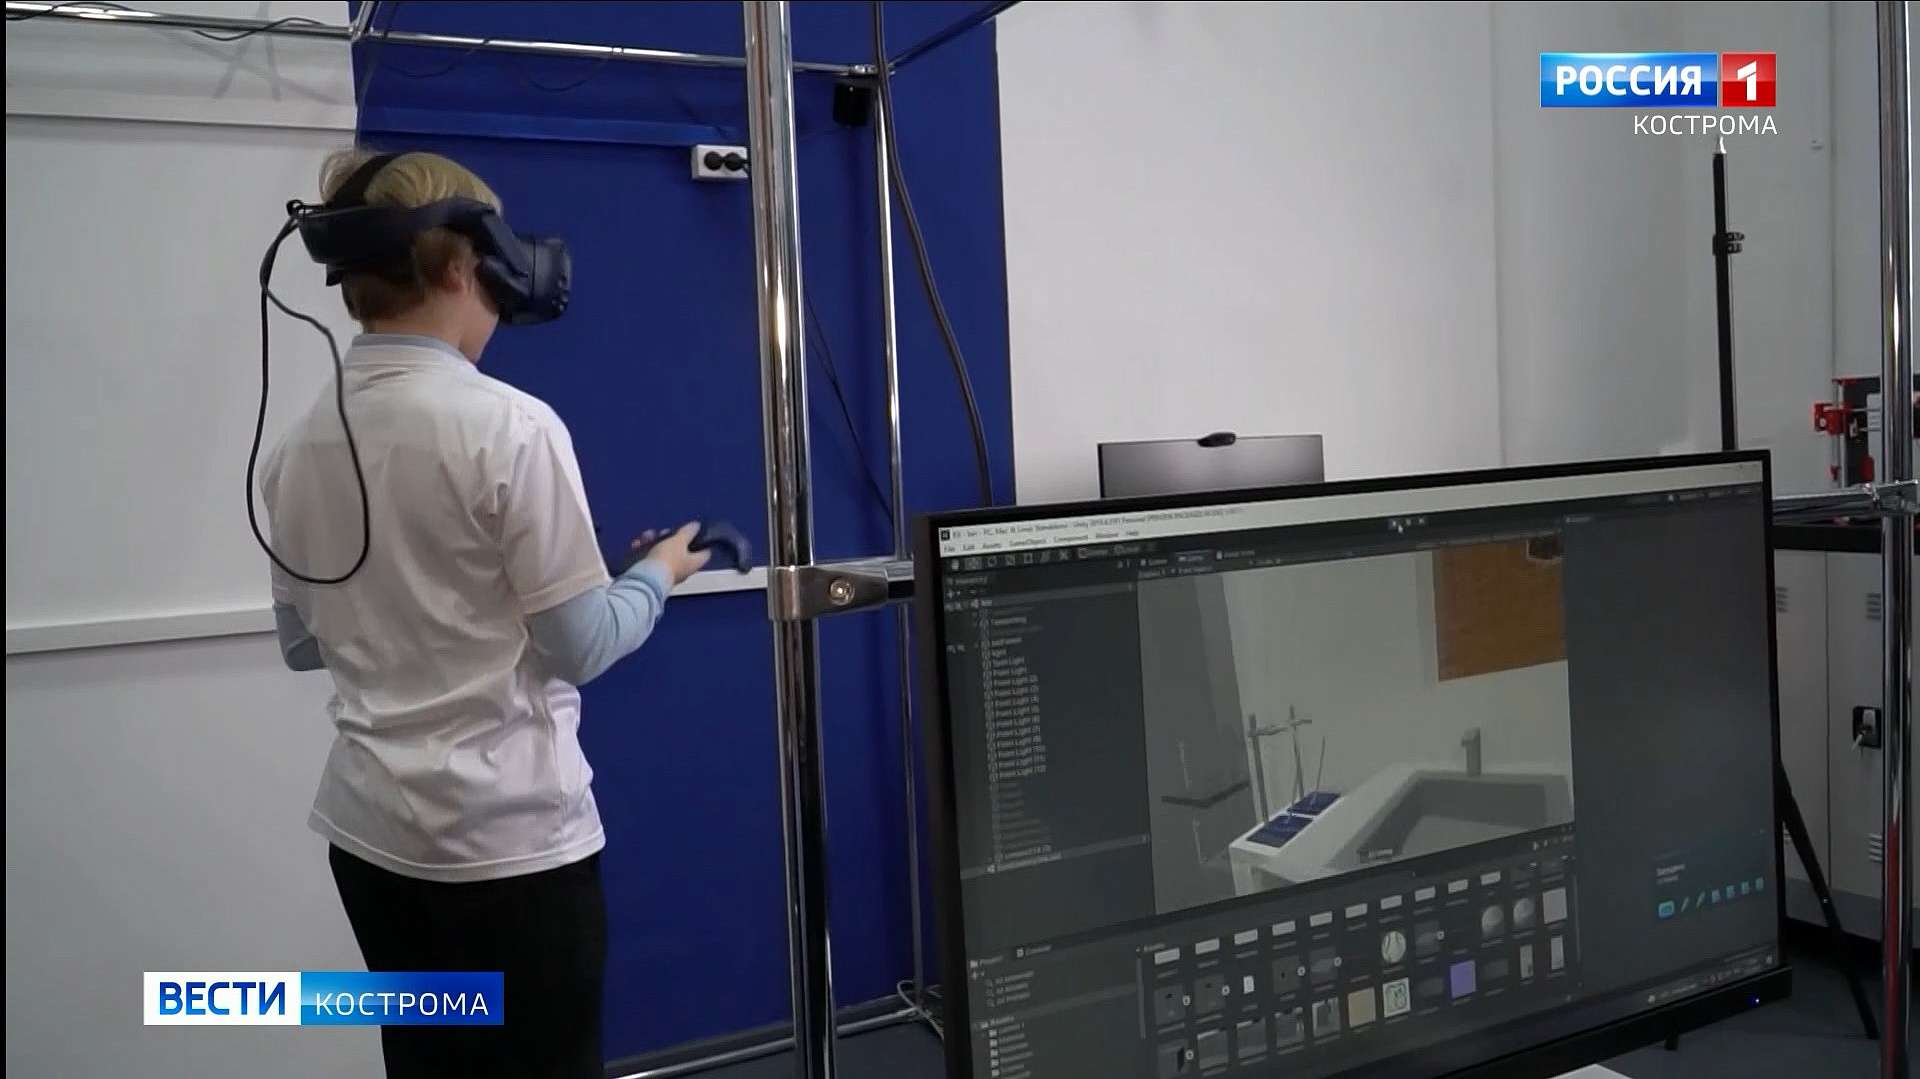 Юные изобретатели костромского «Кванториума» создают практичную виртуальную реальность